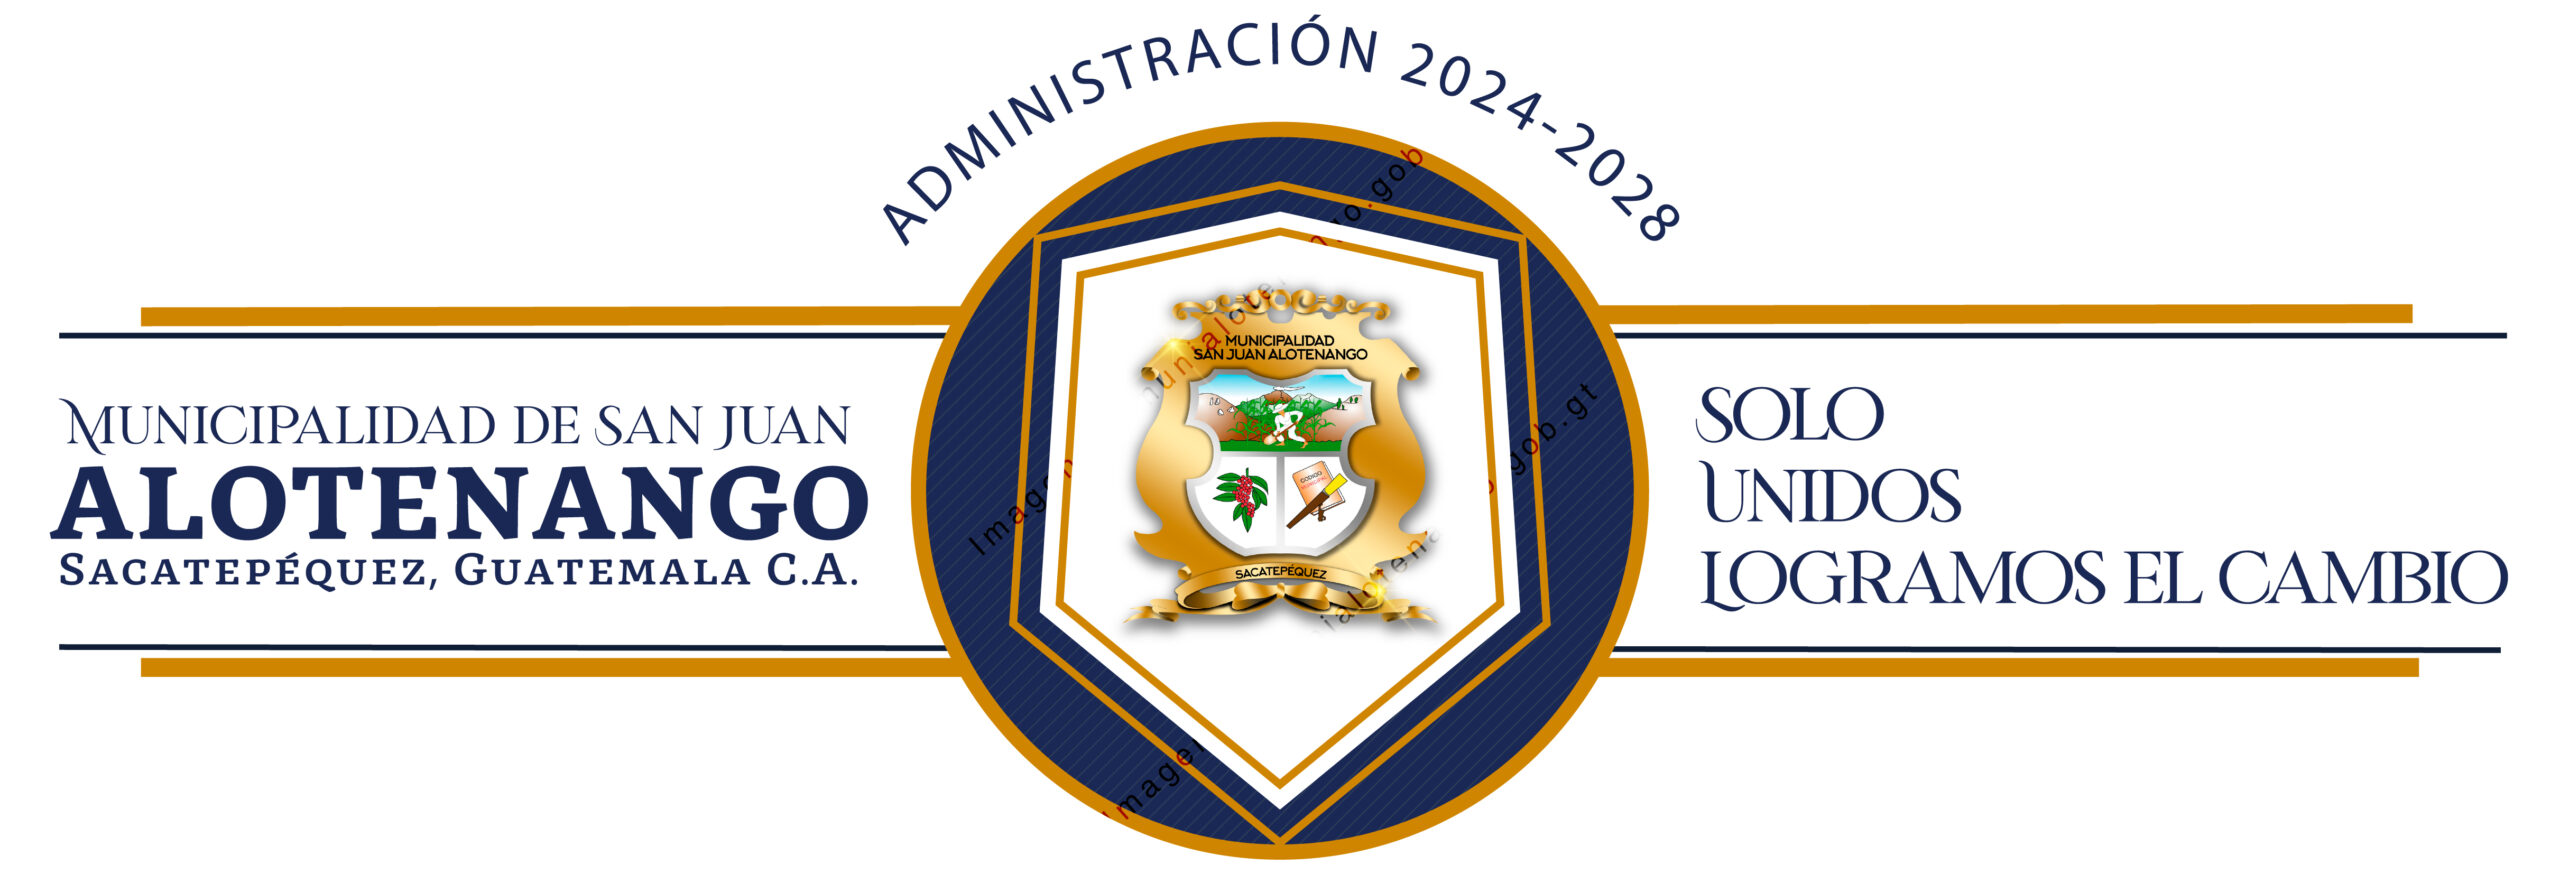 logo 2024-2028 horizontal